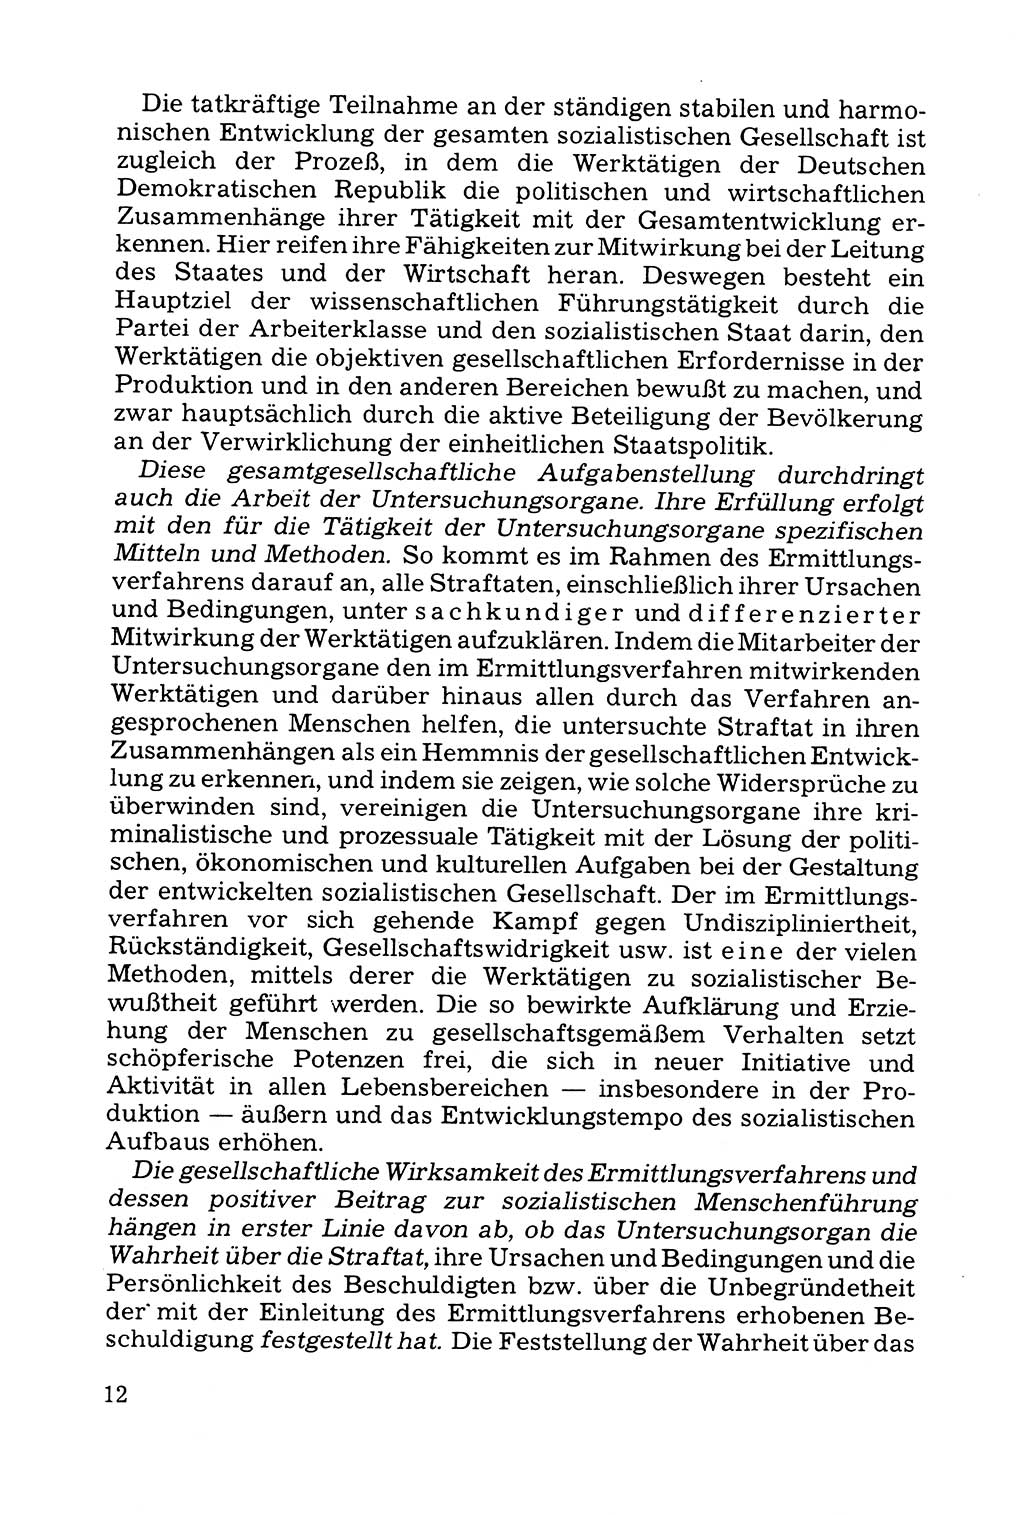 Grundfragen der Beweisführung im Ermittlungsverfahren [Deutsche Demokratische Republik (DDR)] 1980, Seite 12 (Bws.-Fhrg. EV DDR 1980, S. 12)